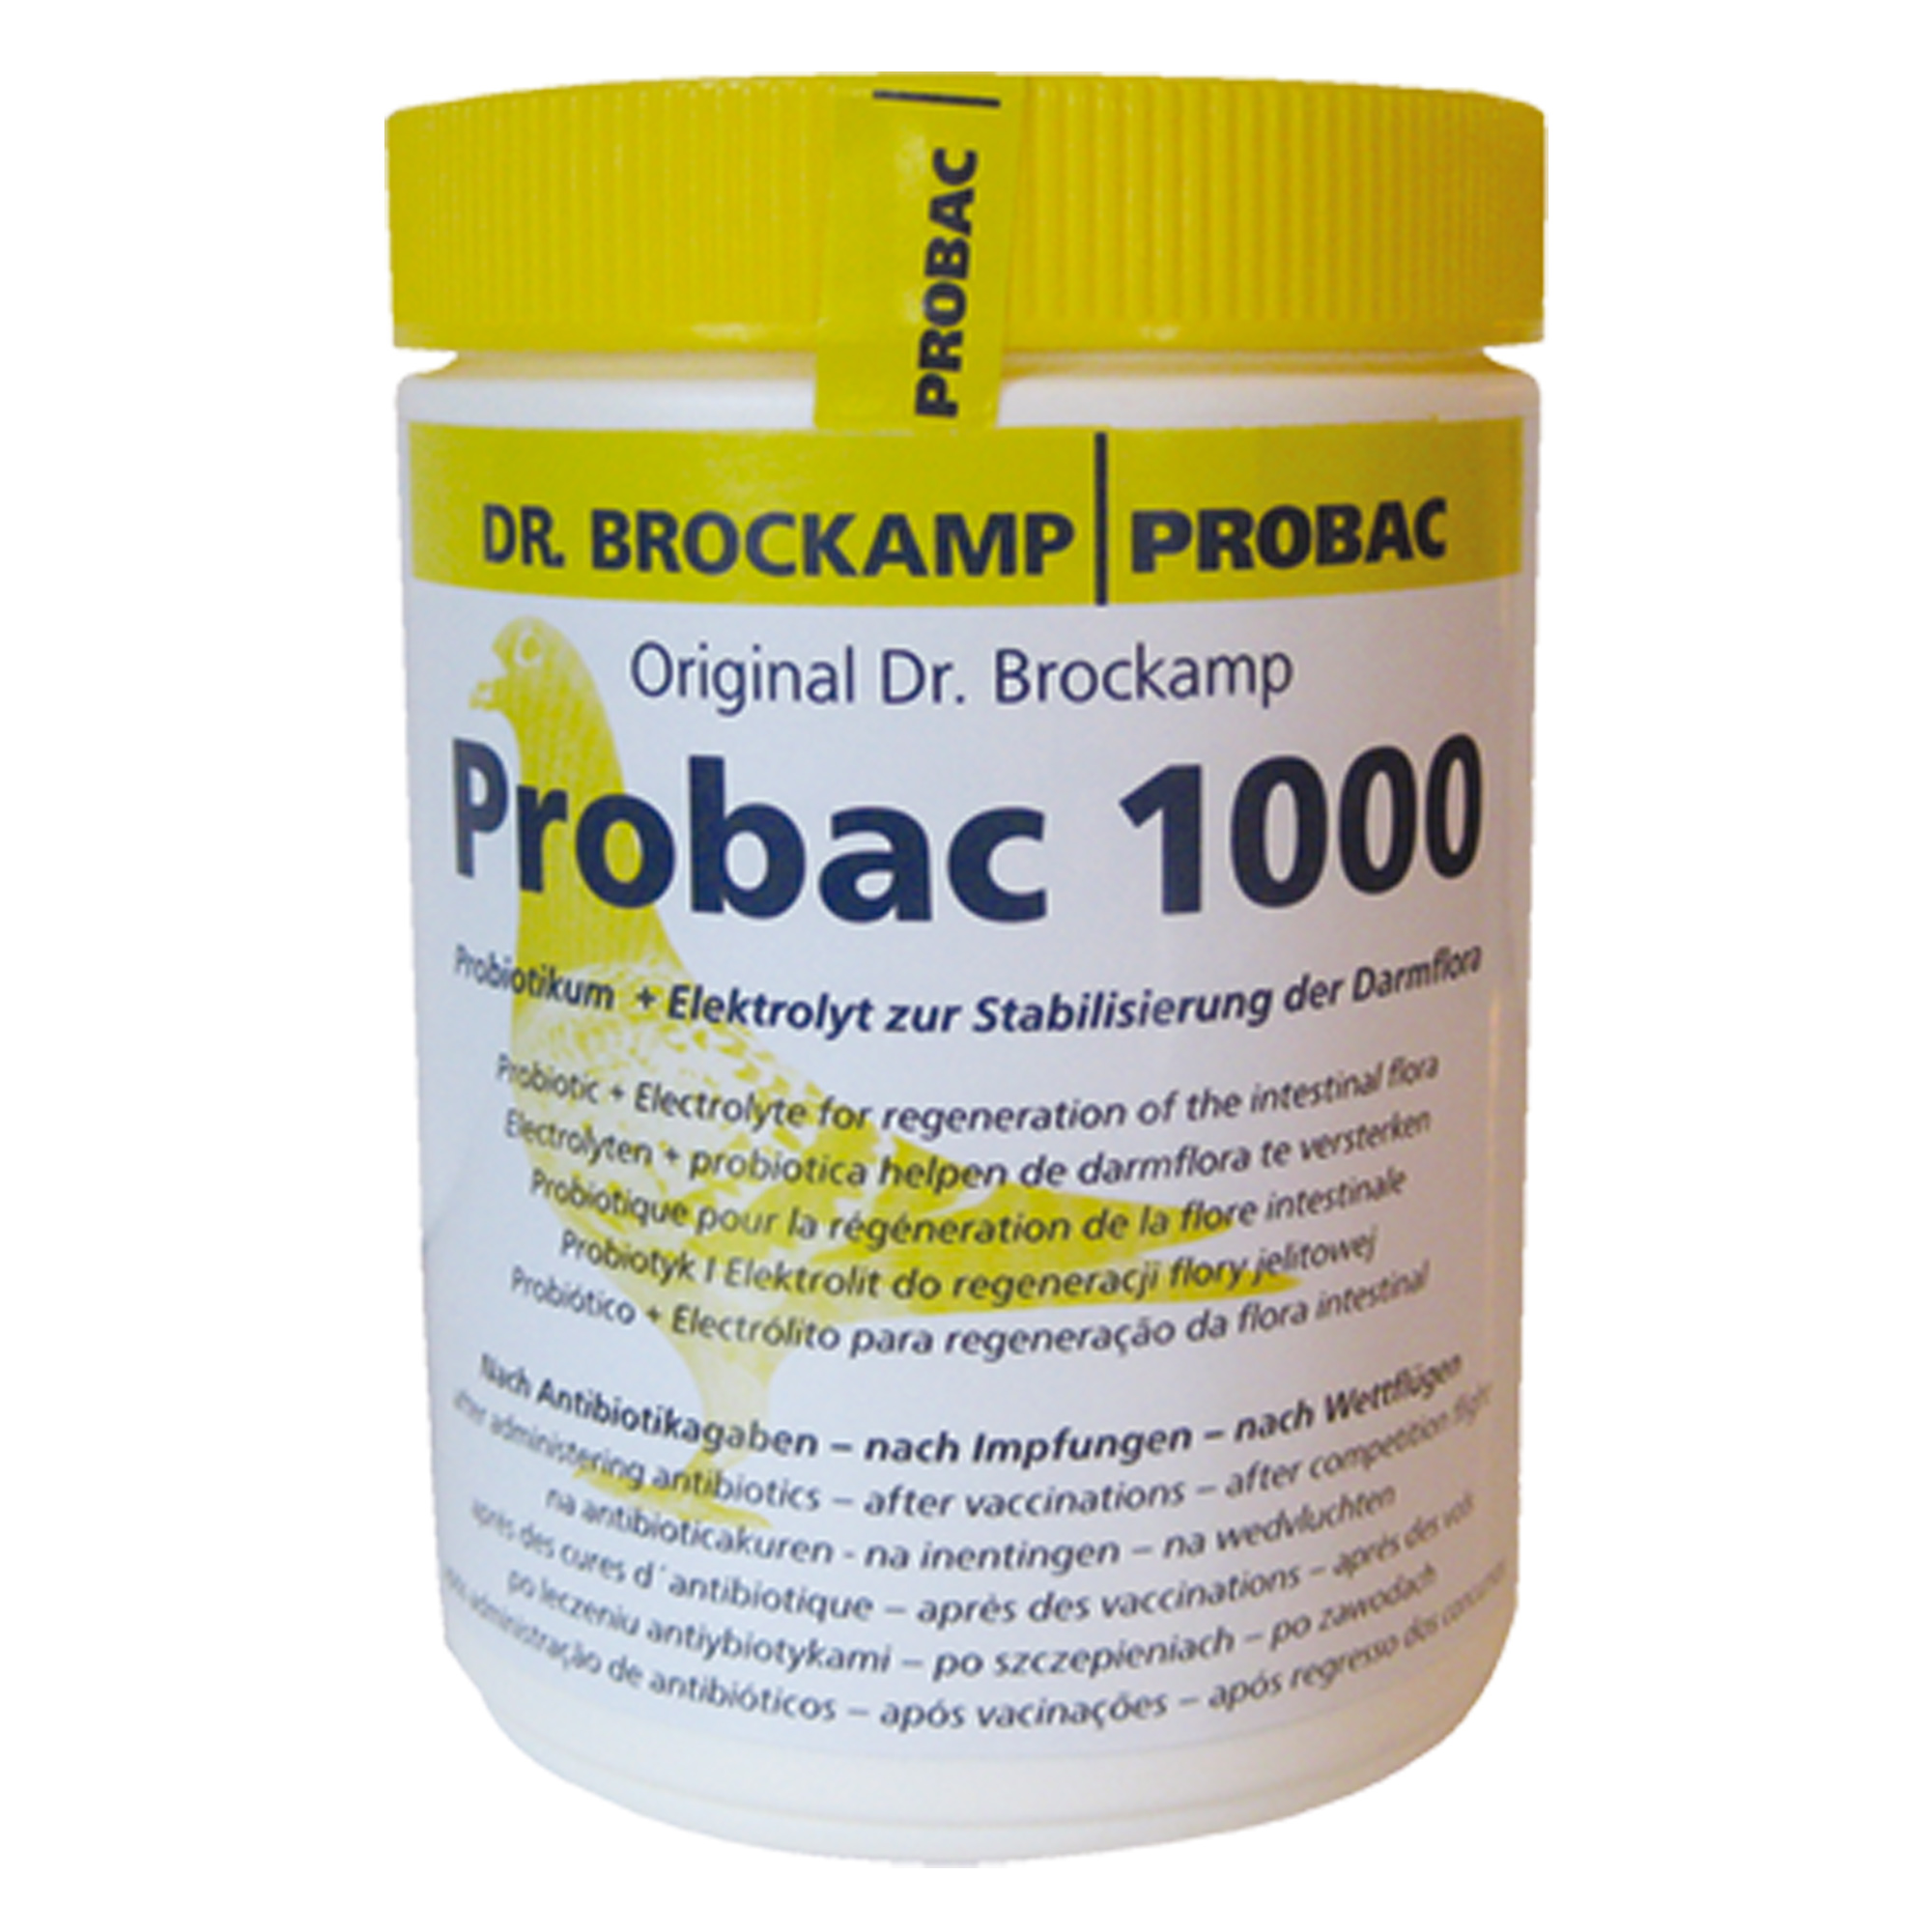 probac-1000-500g